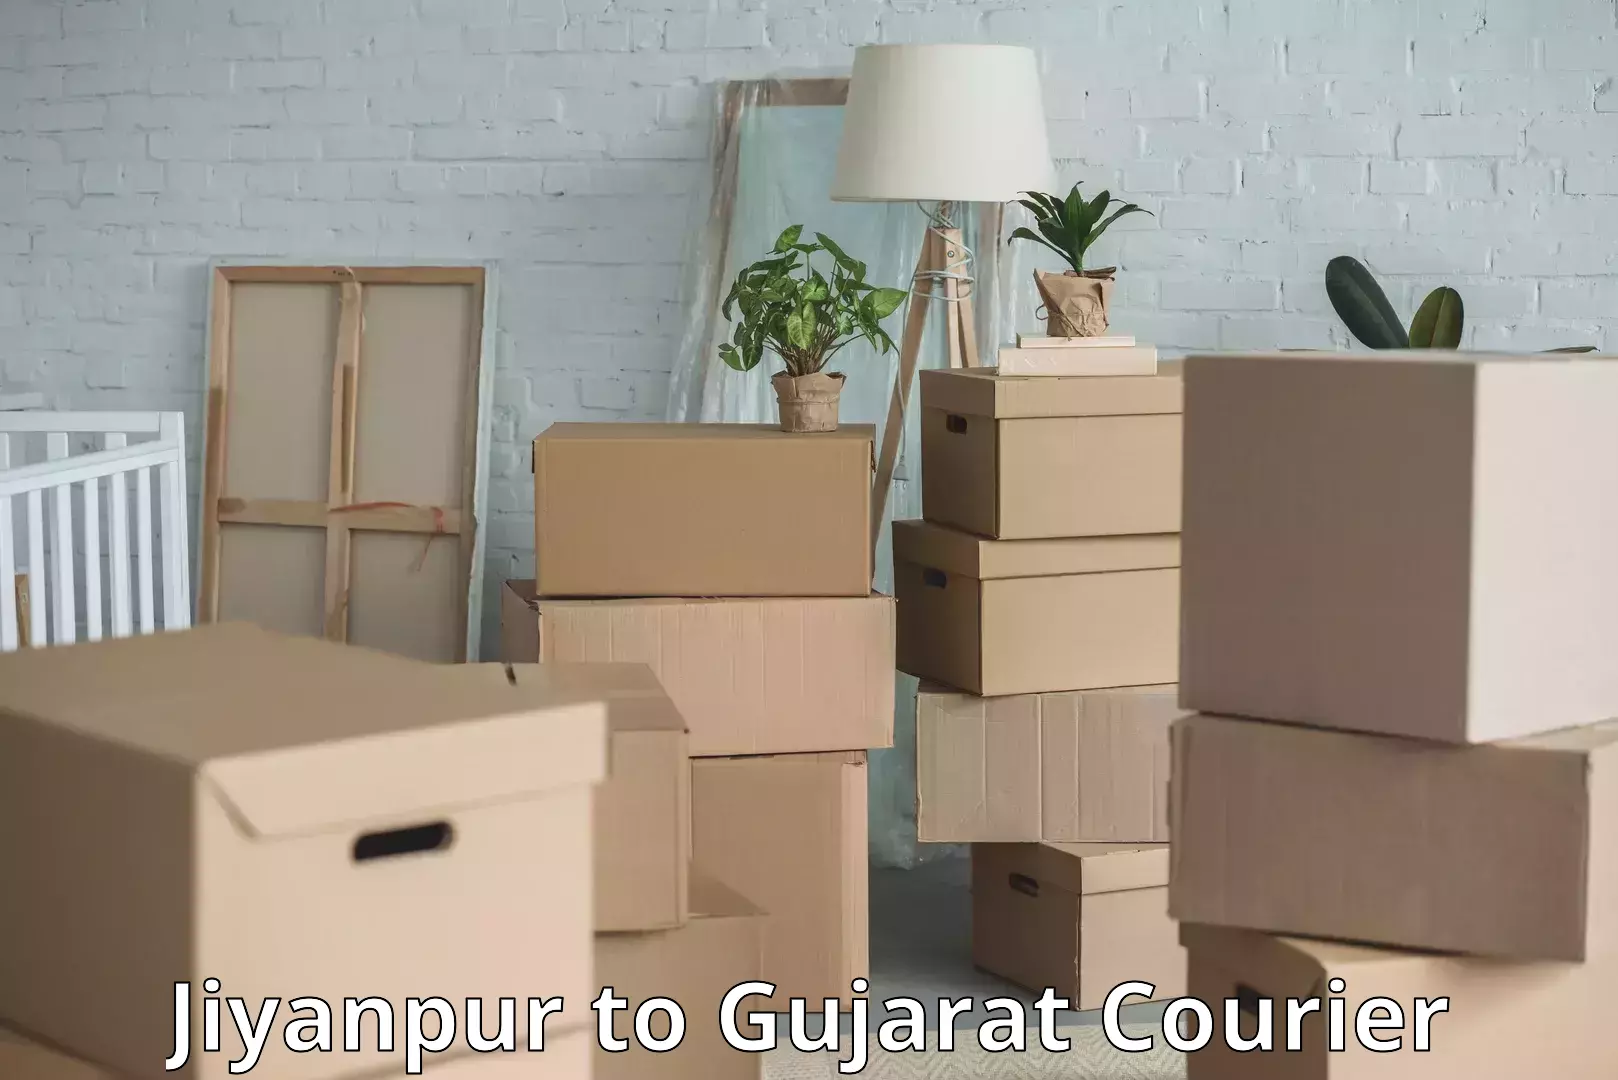 Baggage transport technology Jiyanpur to Gujarat